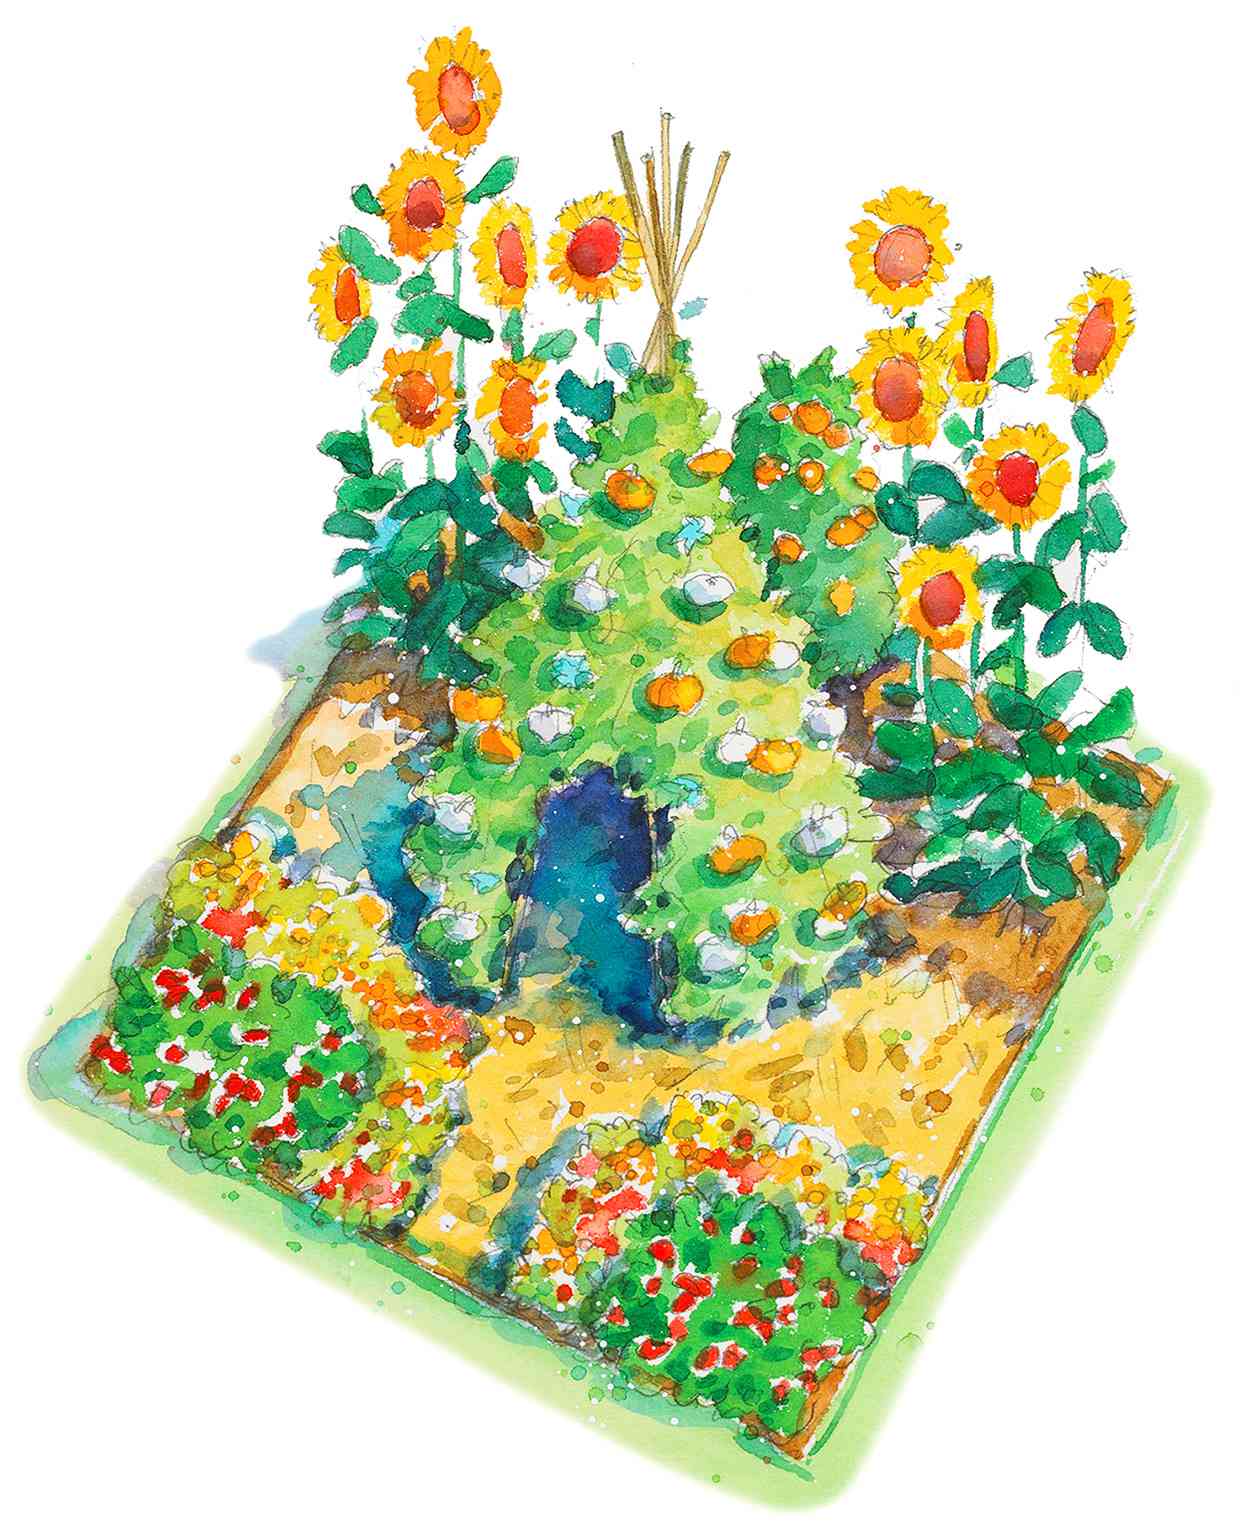 Easy Children’s Vegetable Garden Plan illustration